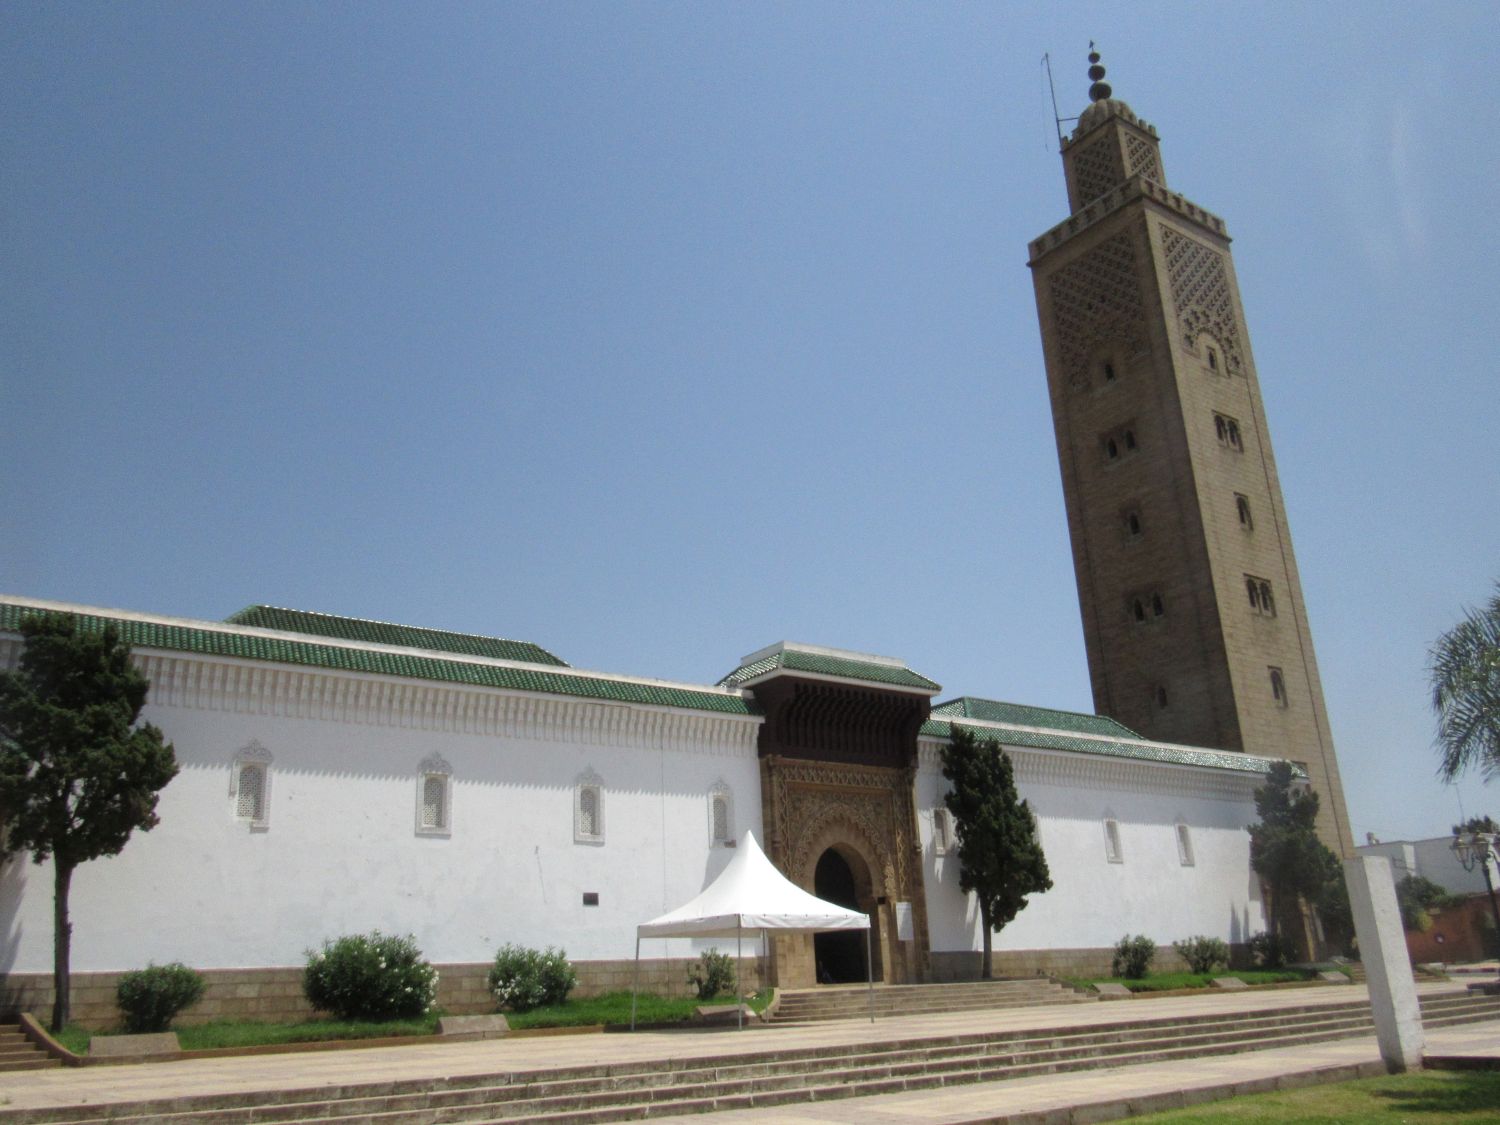 Exterior view, moque exterior, entranceway and minaret.